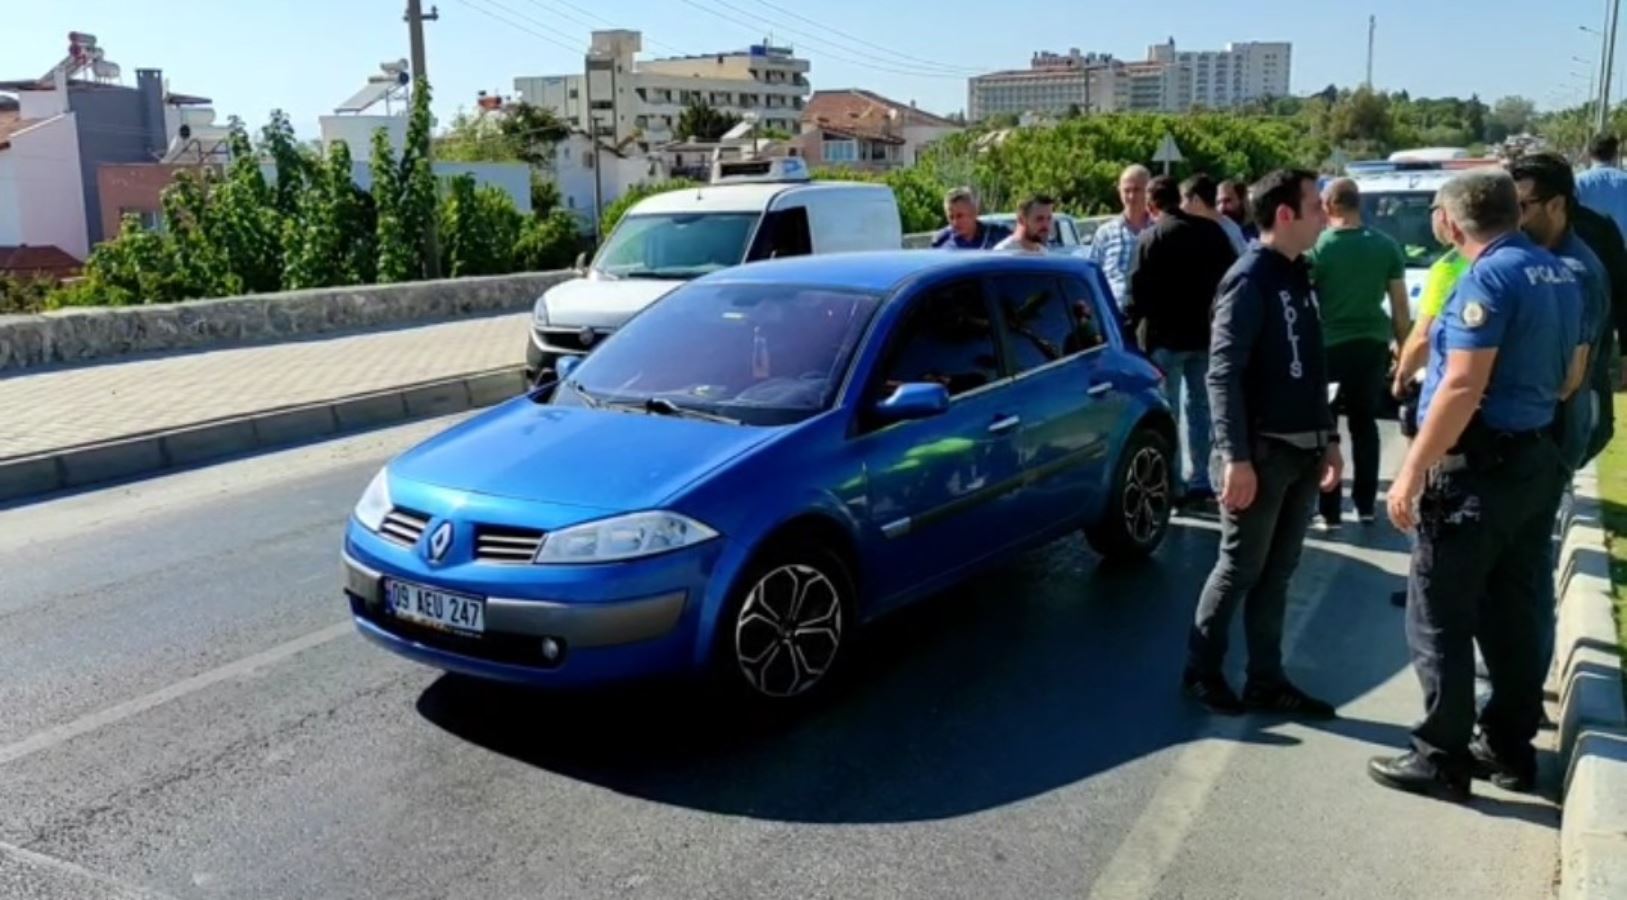 Aydın'da bir güzellik merkezinin ortakları arasında kavga çıkan kavgada 2 kişi yaralandı, 4 kişi gözaltında